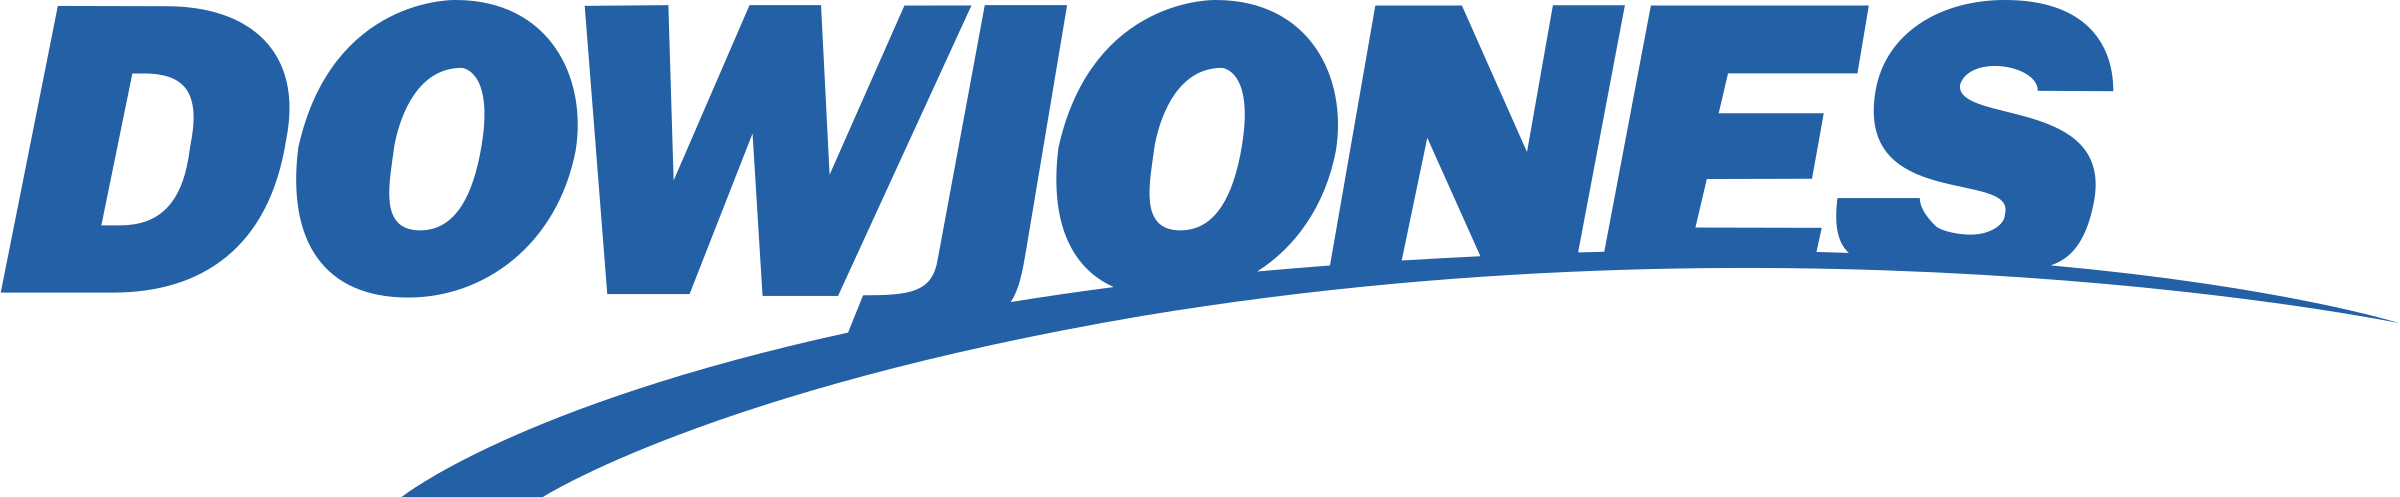 dowjones-1-logo-png-transparent